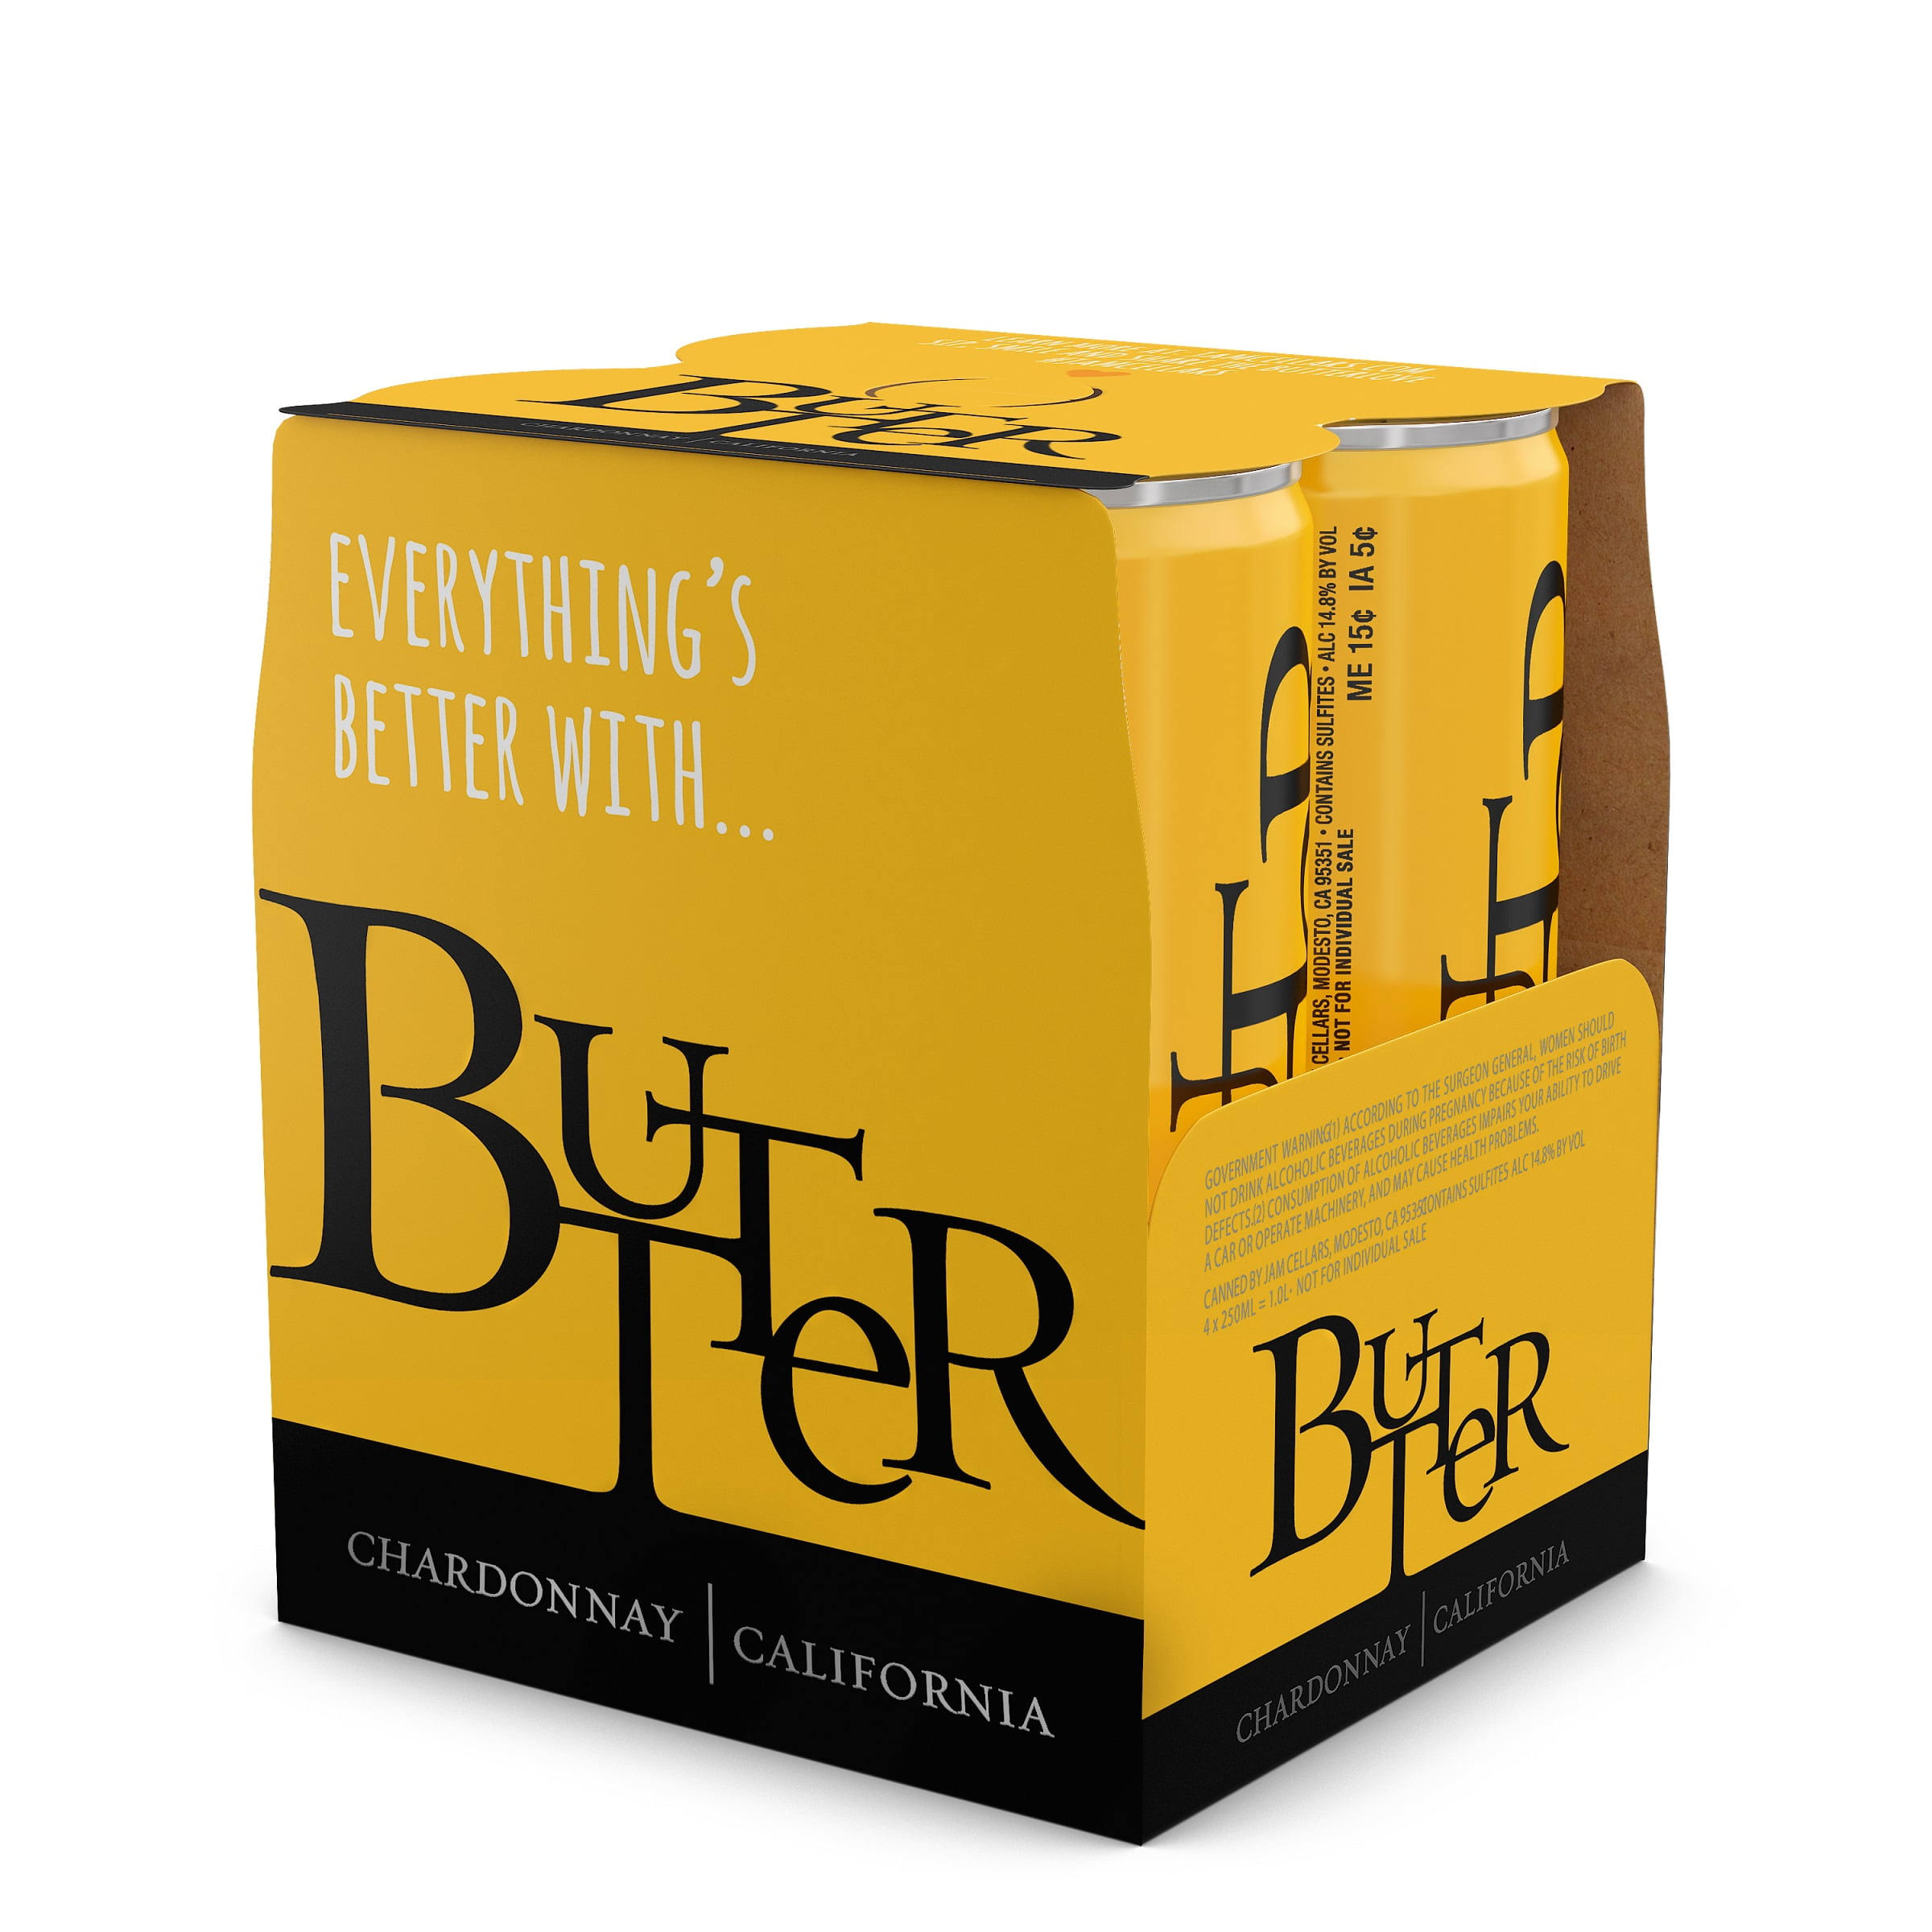 Butter Chardonnay, California - 4 pack, 250 ml bottles